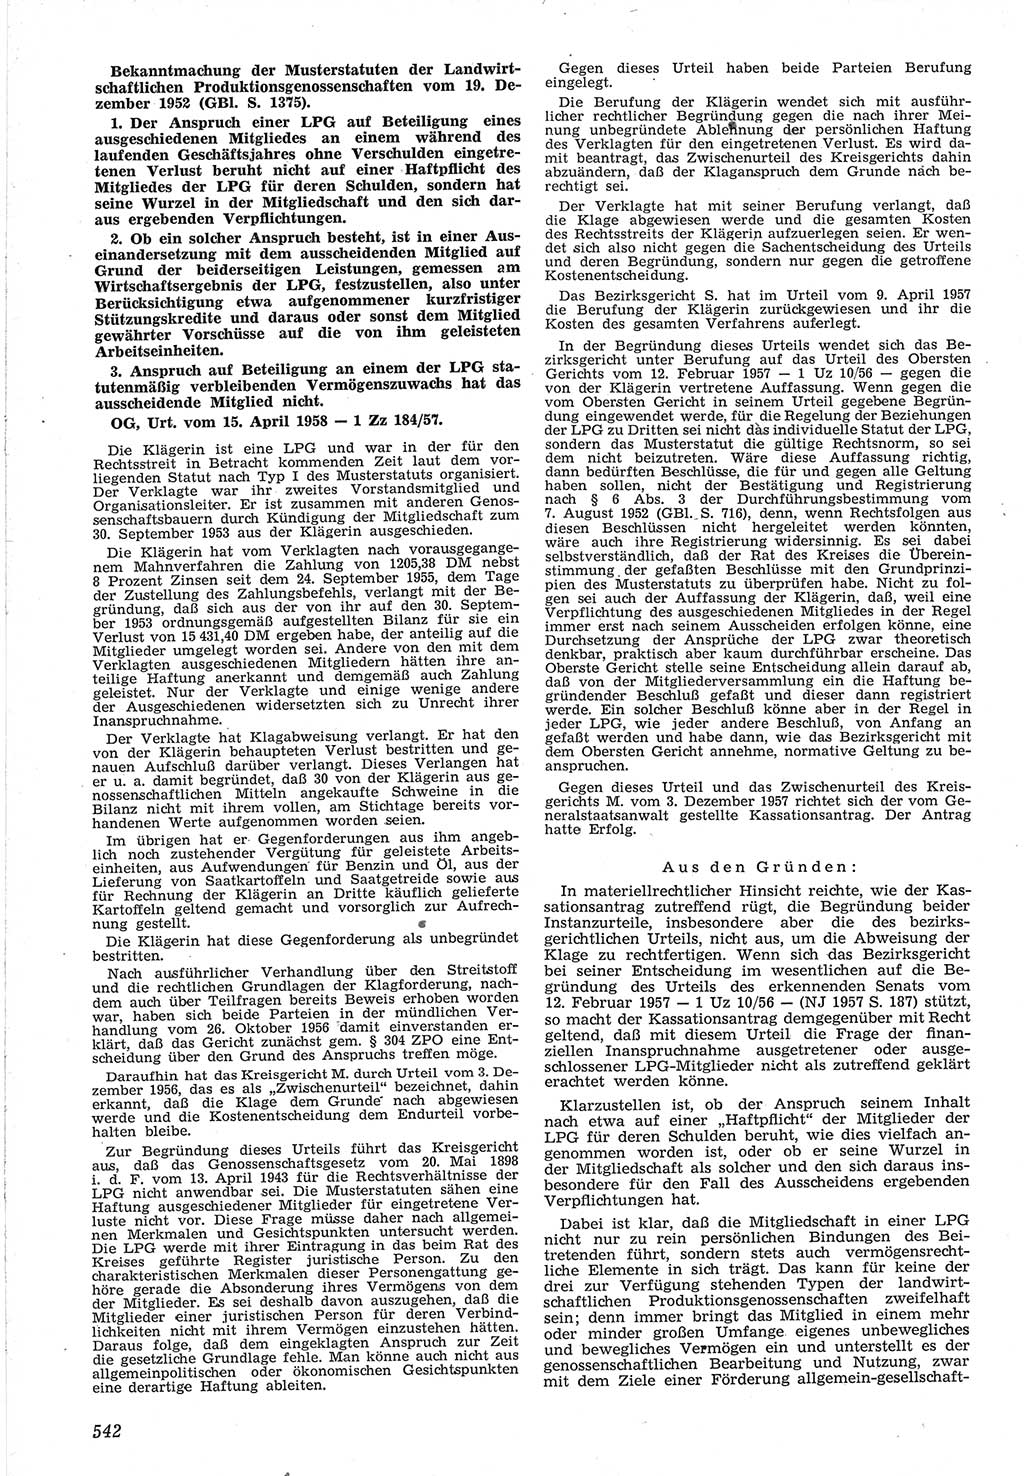 Neue Justiz (NJ), Zeitschrift für Recht und Rechtswissenschaft [Deutsche Demokratische Republik (DDR)], 12. Jahrgang 1958, Seite 542 (NJ DDR 1958, S. 542)